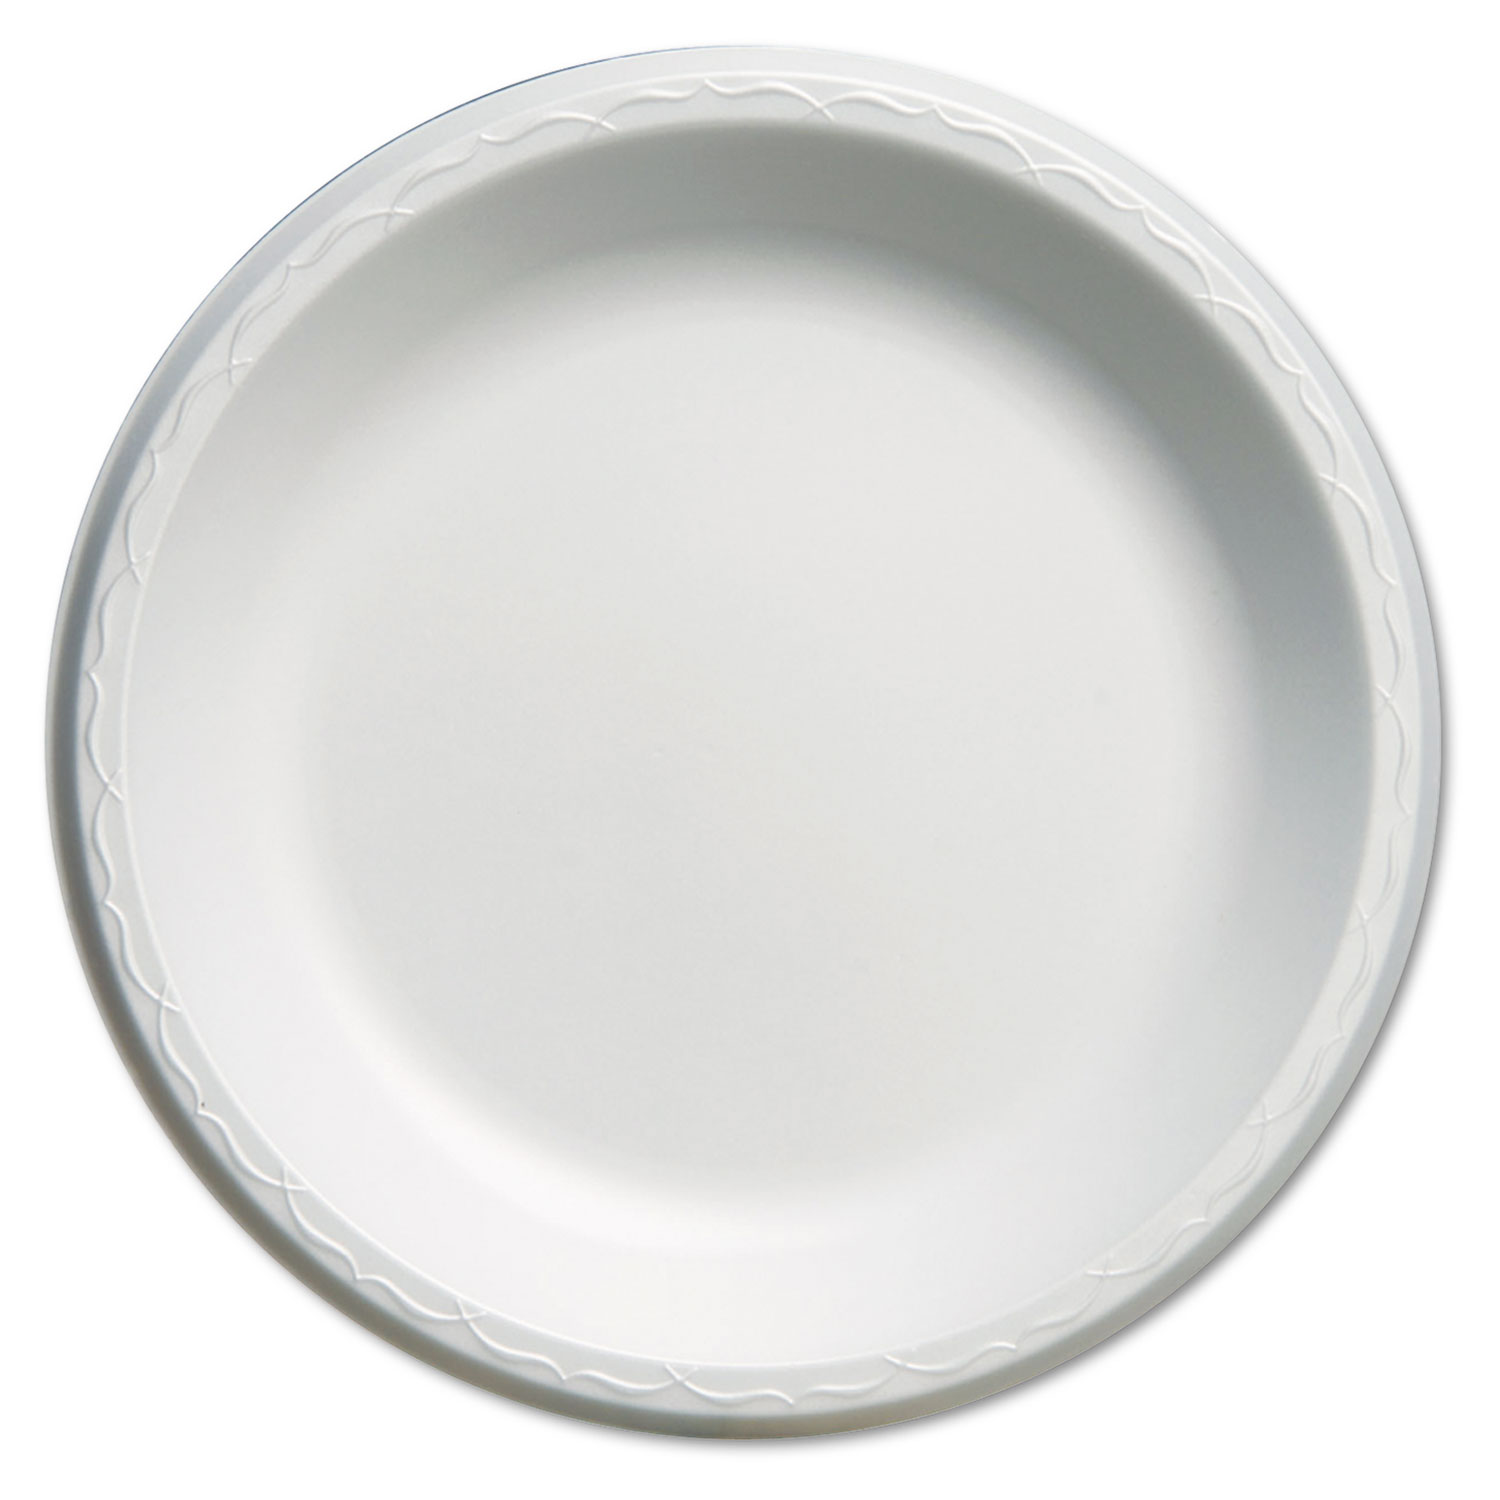  Genpak LAM10--- Elite Laminated Foam Plates, 10 1/4 Dia, White, Round, 125/Pack, 4 Pack/Carton (GNPLAM10) 